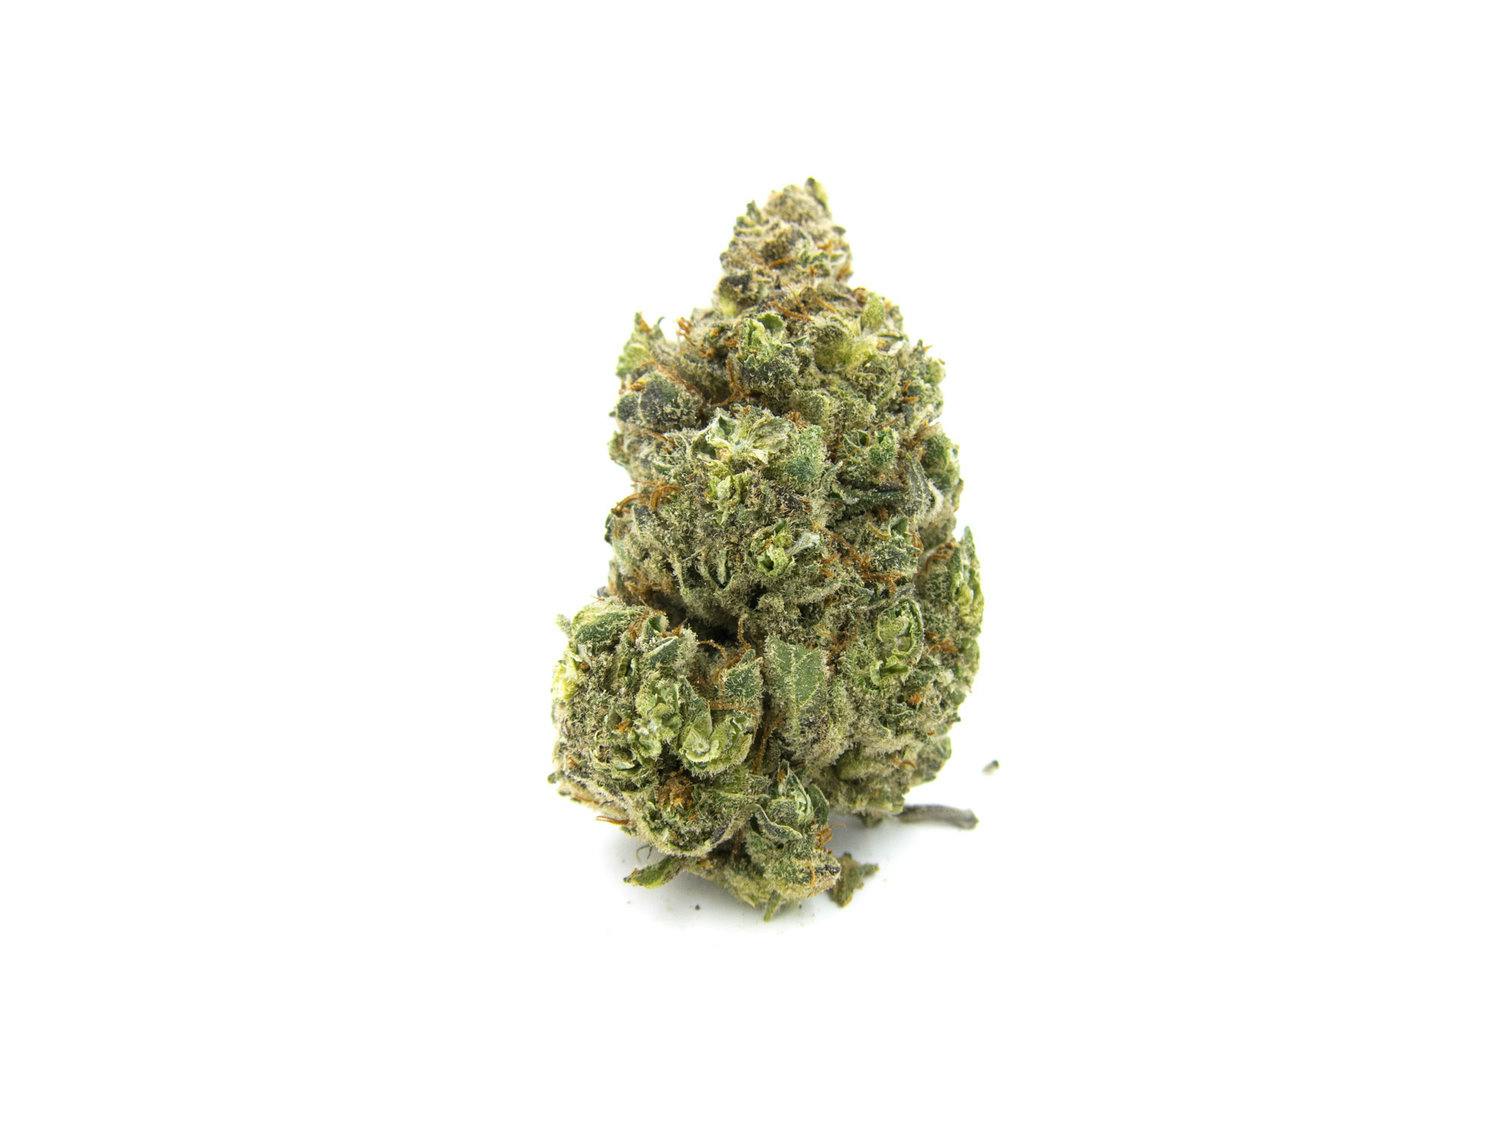 Black Jack cannabis flower weed